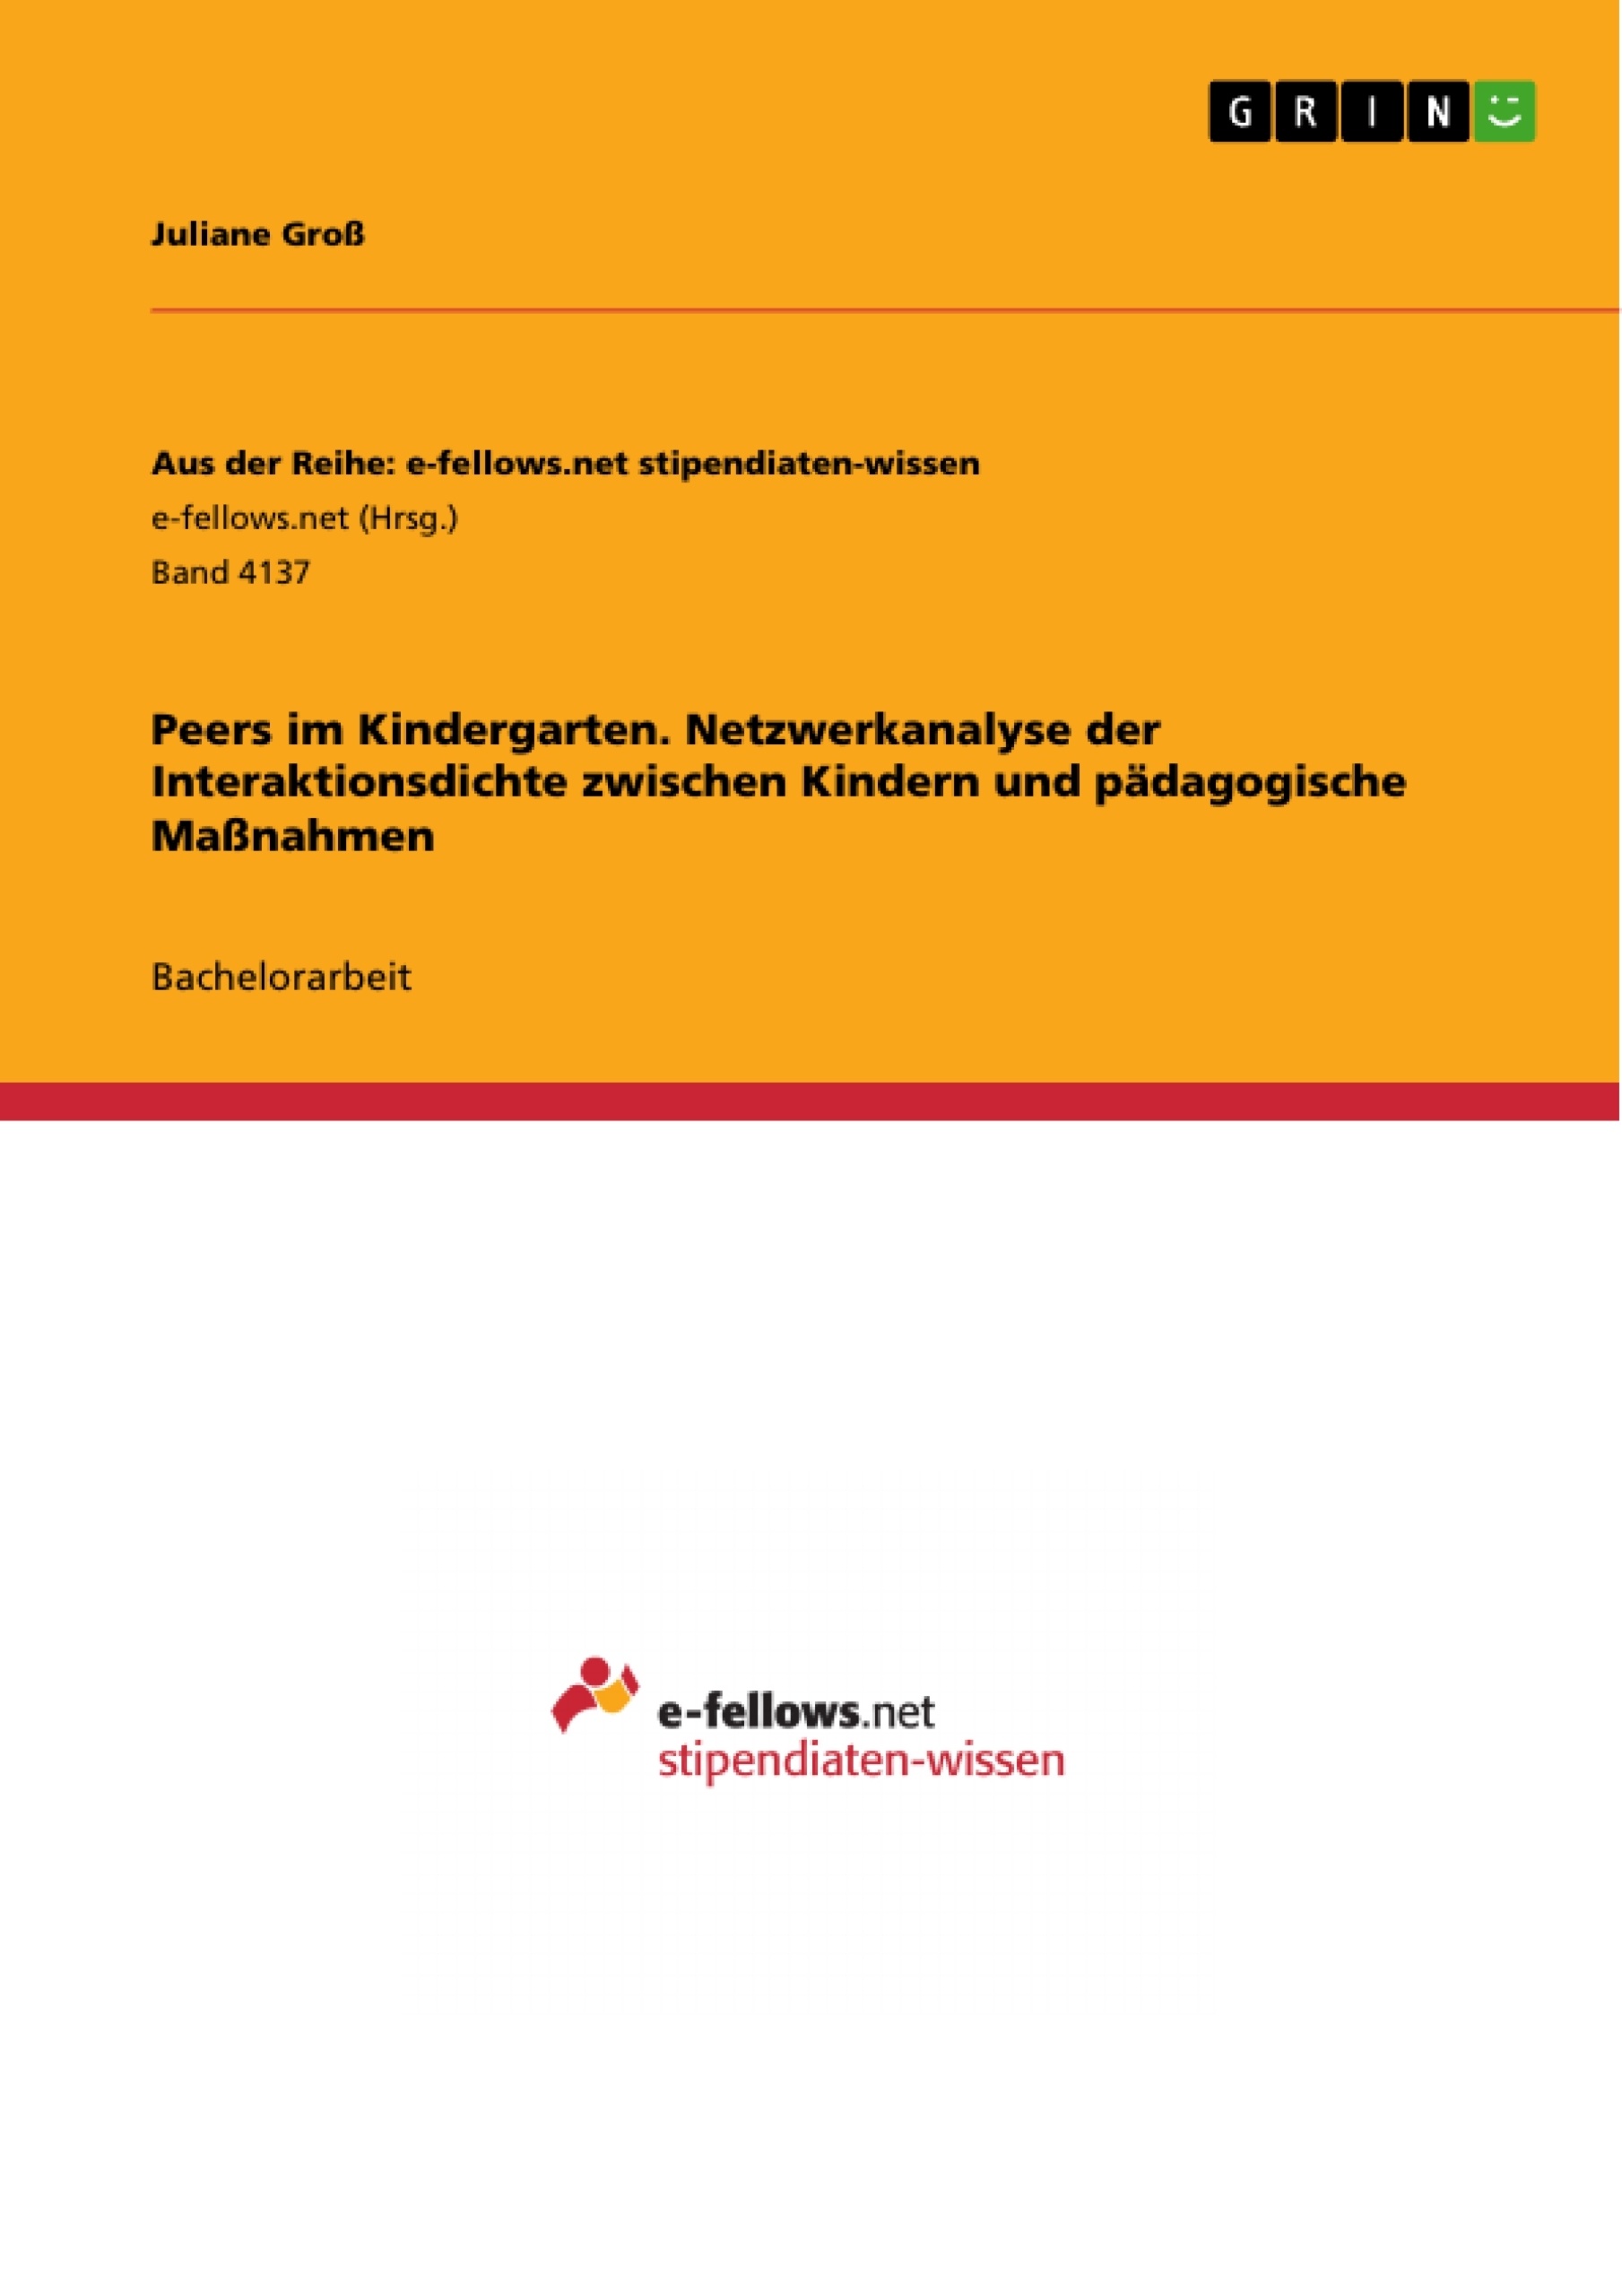 Title: Peers im Kindergarten. Netzwerkanalyse der Interaktionsdichte zwischen Kindern und pädagogische Maßnahmen